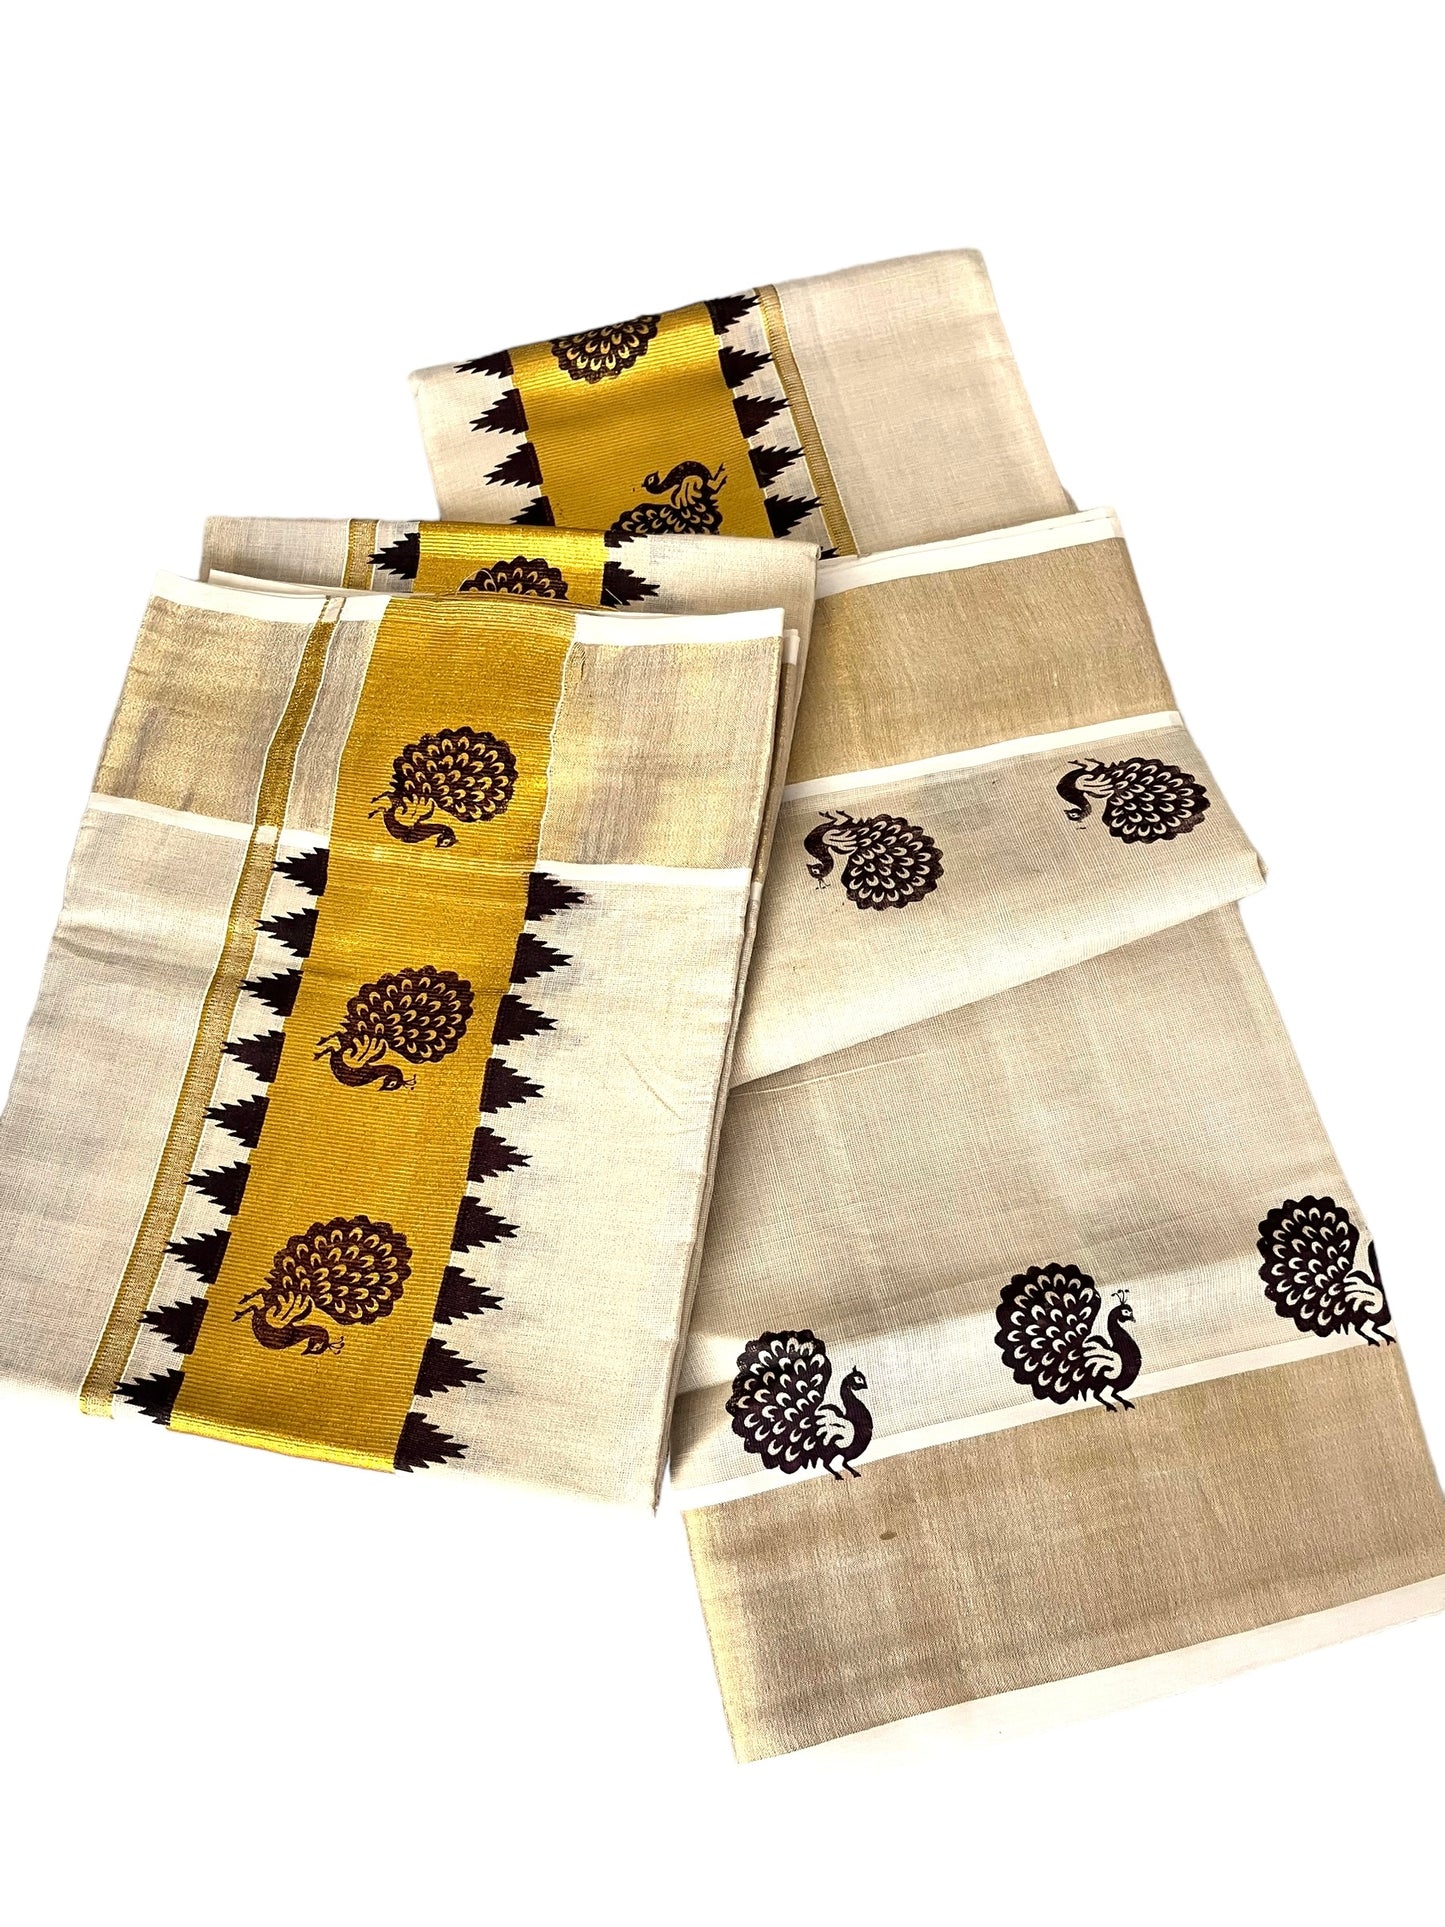 Kerala Traditional set Mundu Tissue coffee brown peacock print gold kasavu| Onam Vishu Mundum Neriyathum| Petelz| Indian  Saree| Janmashtami